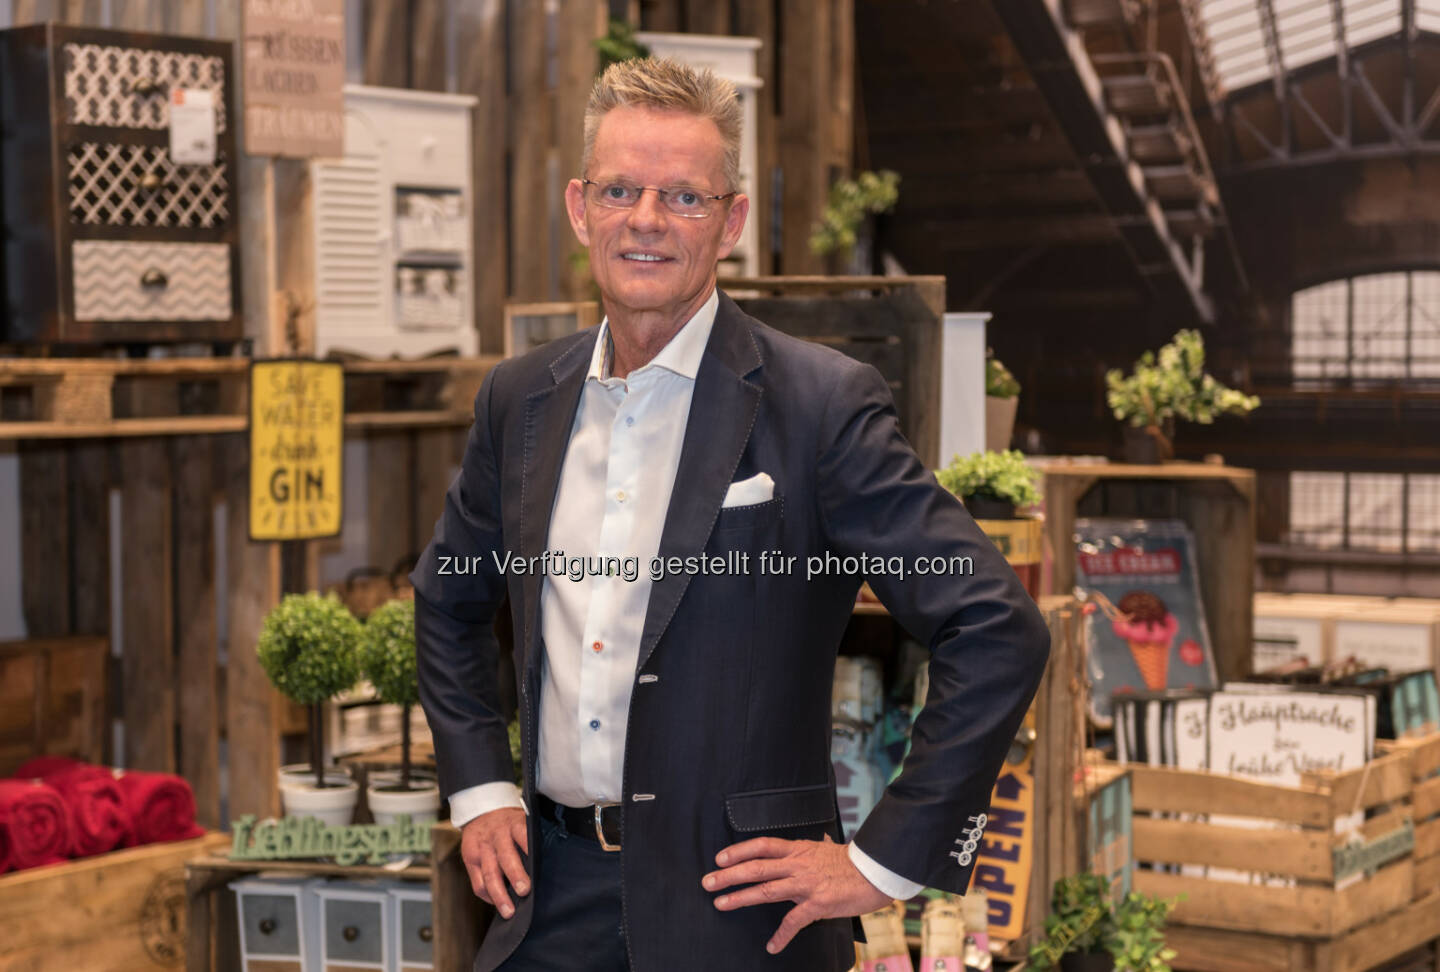 Dirk Herzig / Geschäftsführer lipo - Lipo Möbelhandels GmbH: Die Schweizer kommen nach Ansfelden! Und jetzt können sich auch die Oberösterreicher endlich wirklich frech günstig einrichten (Fotocredit: Lipo Möbelhandels GmbH)